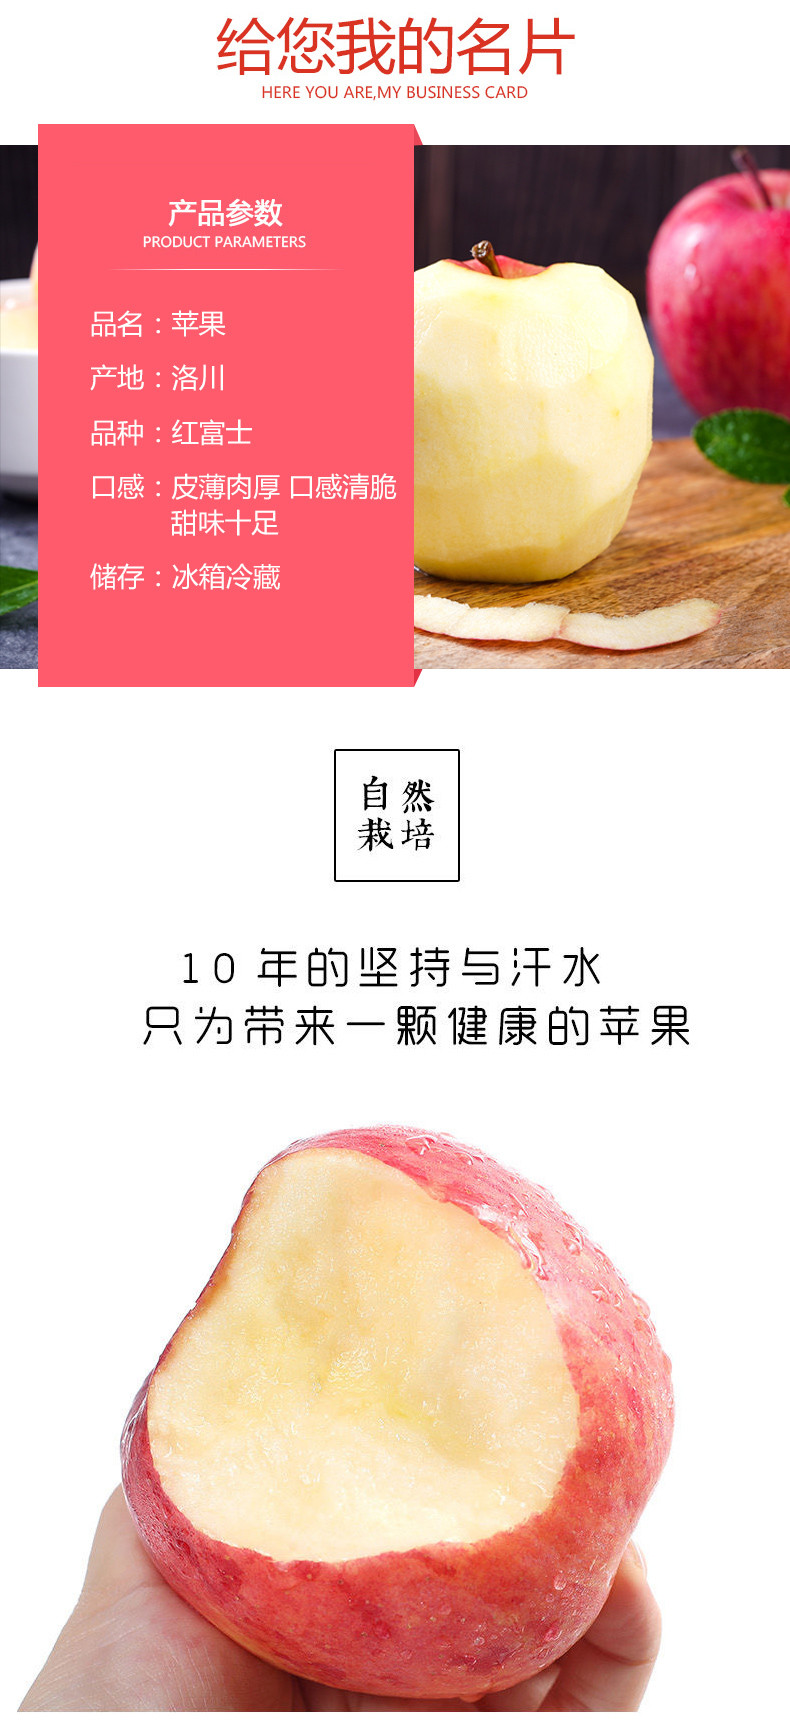 【宜昌振兴馆】农夫乡情 现摘新鲜红富士脆甜多汁红苹果5斤